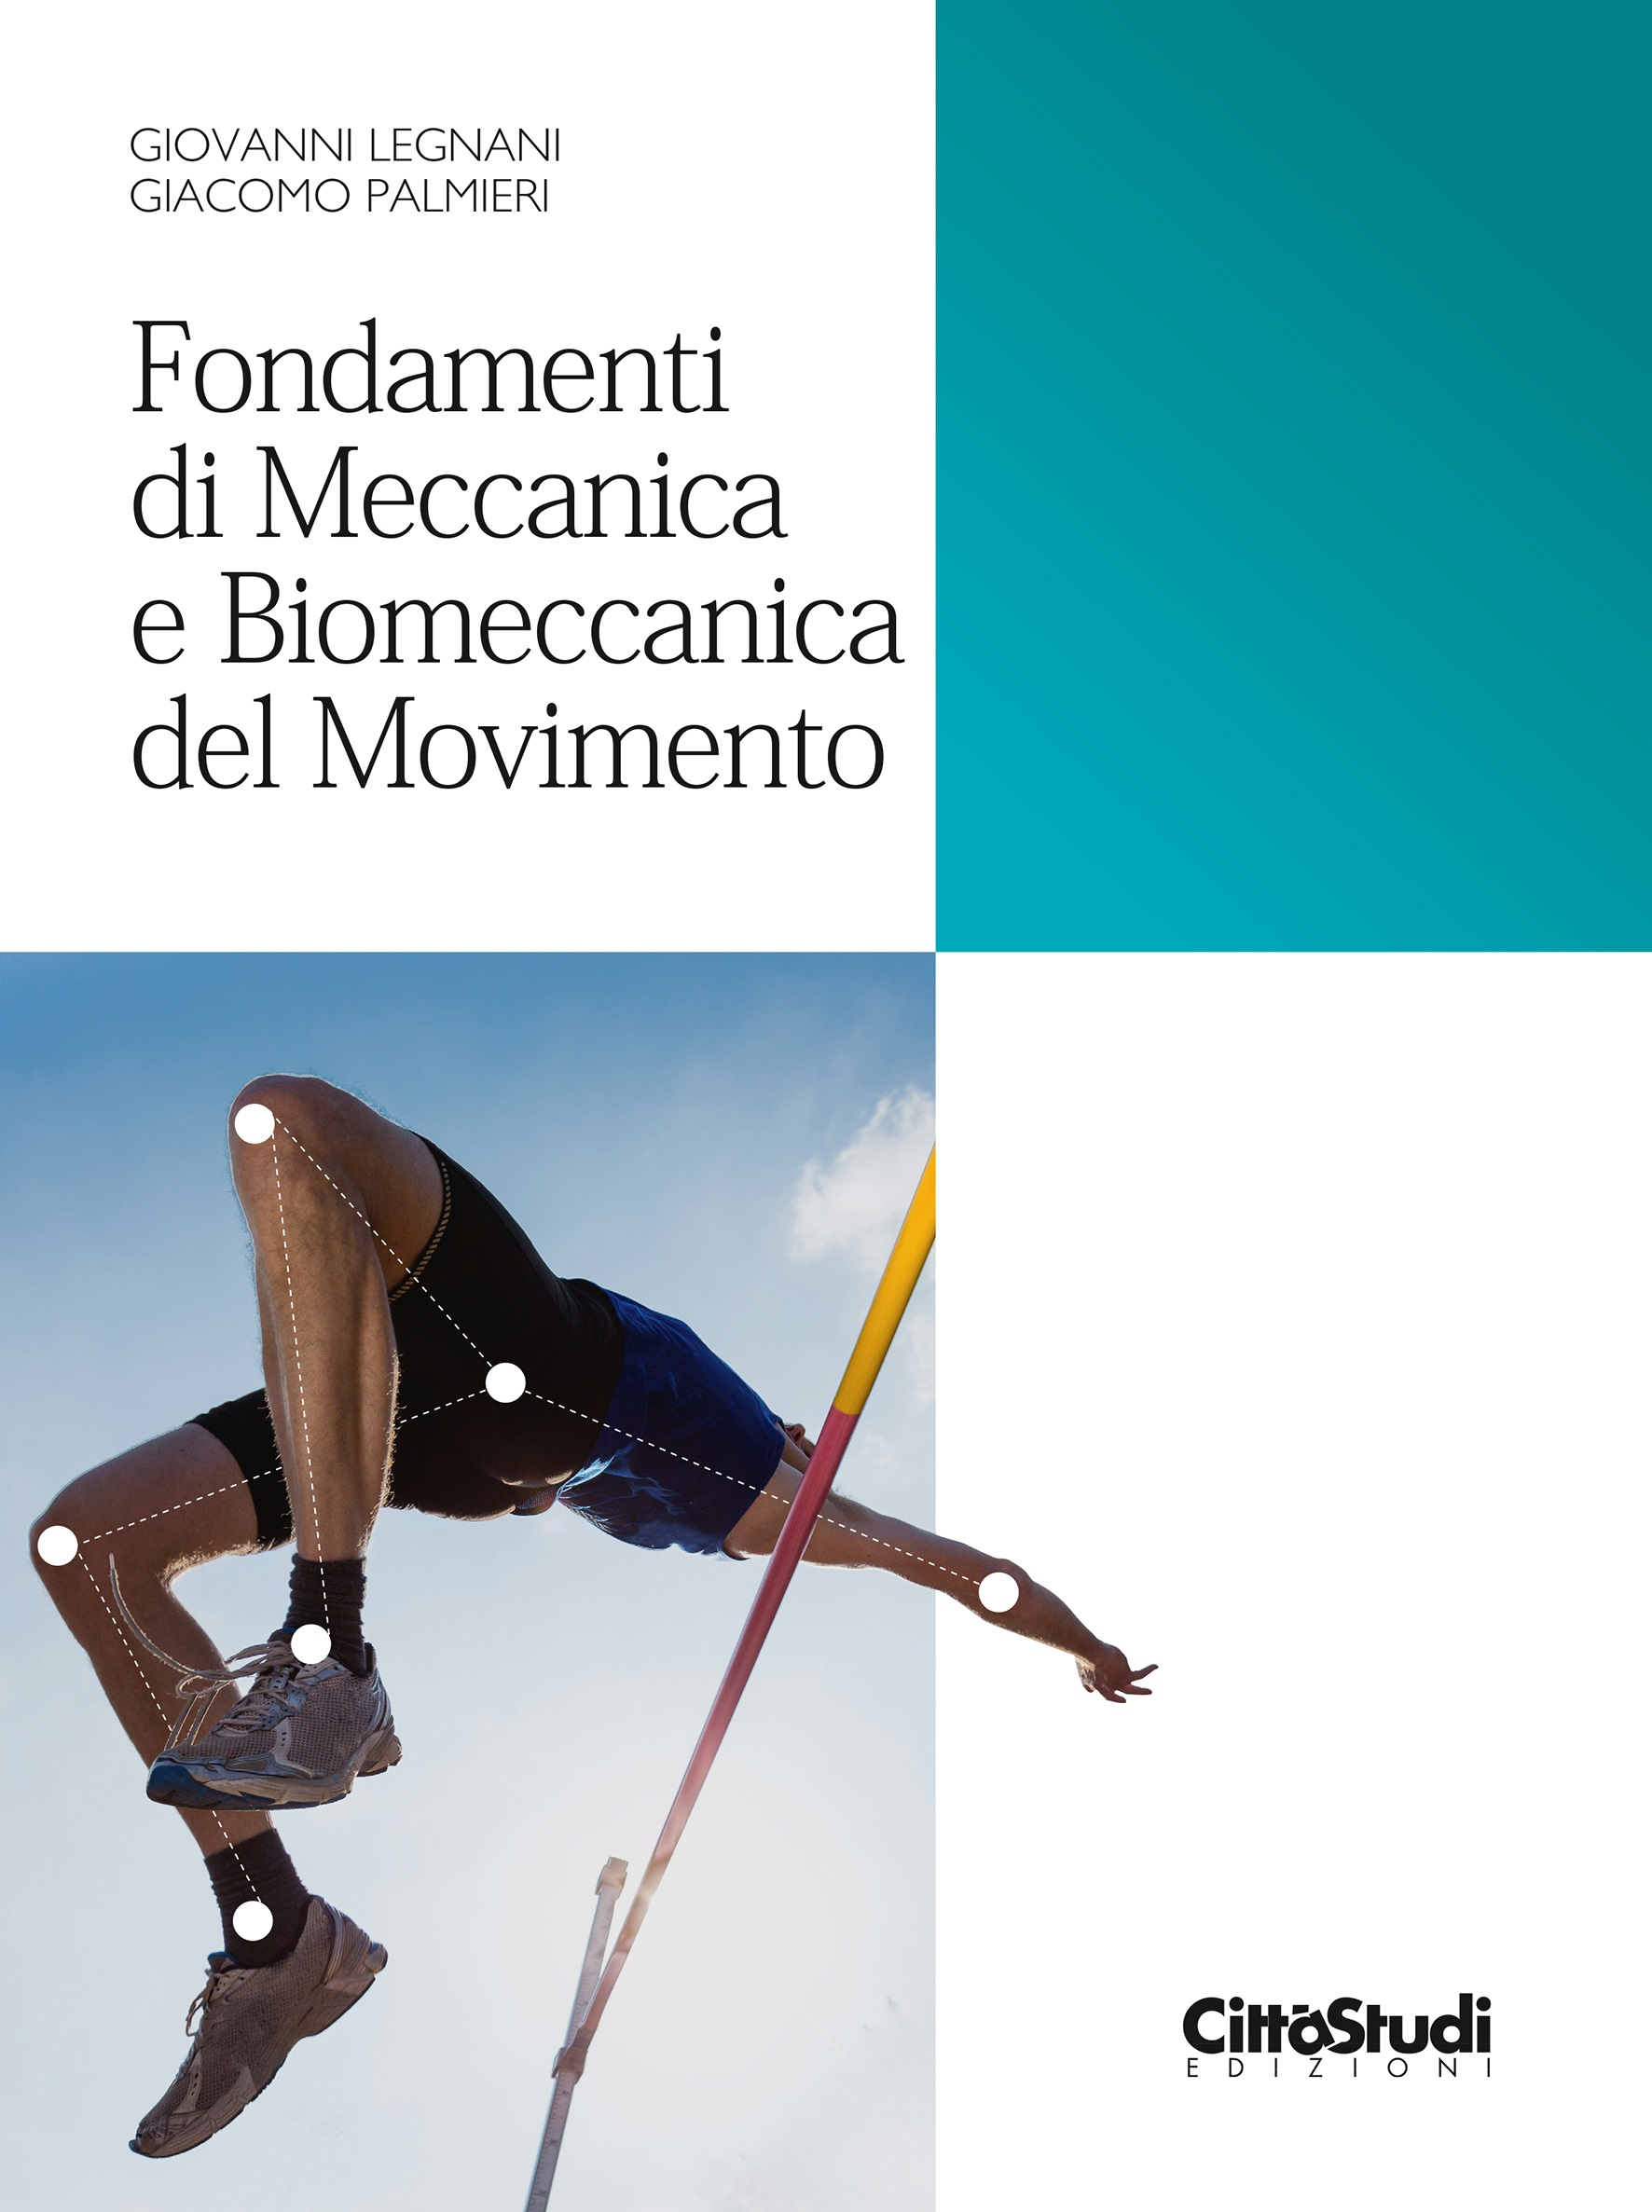 Image of Fondamenti di meccanica e biomeccanica del movimento